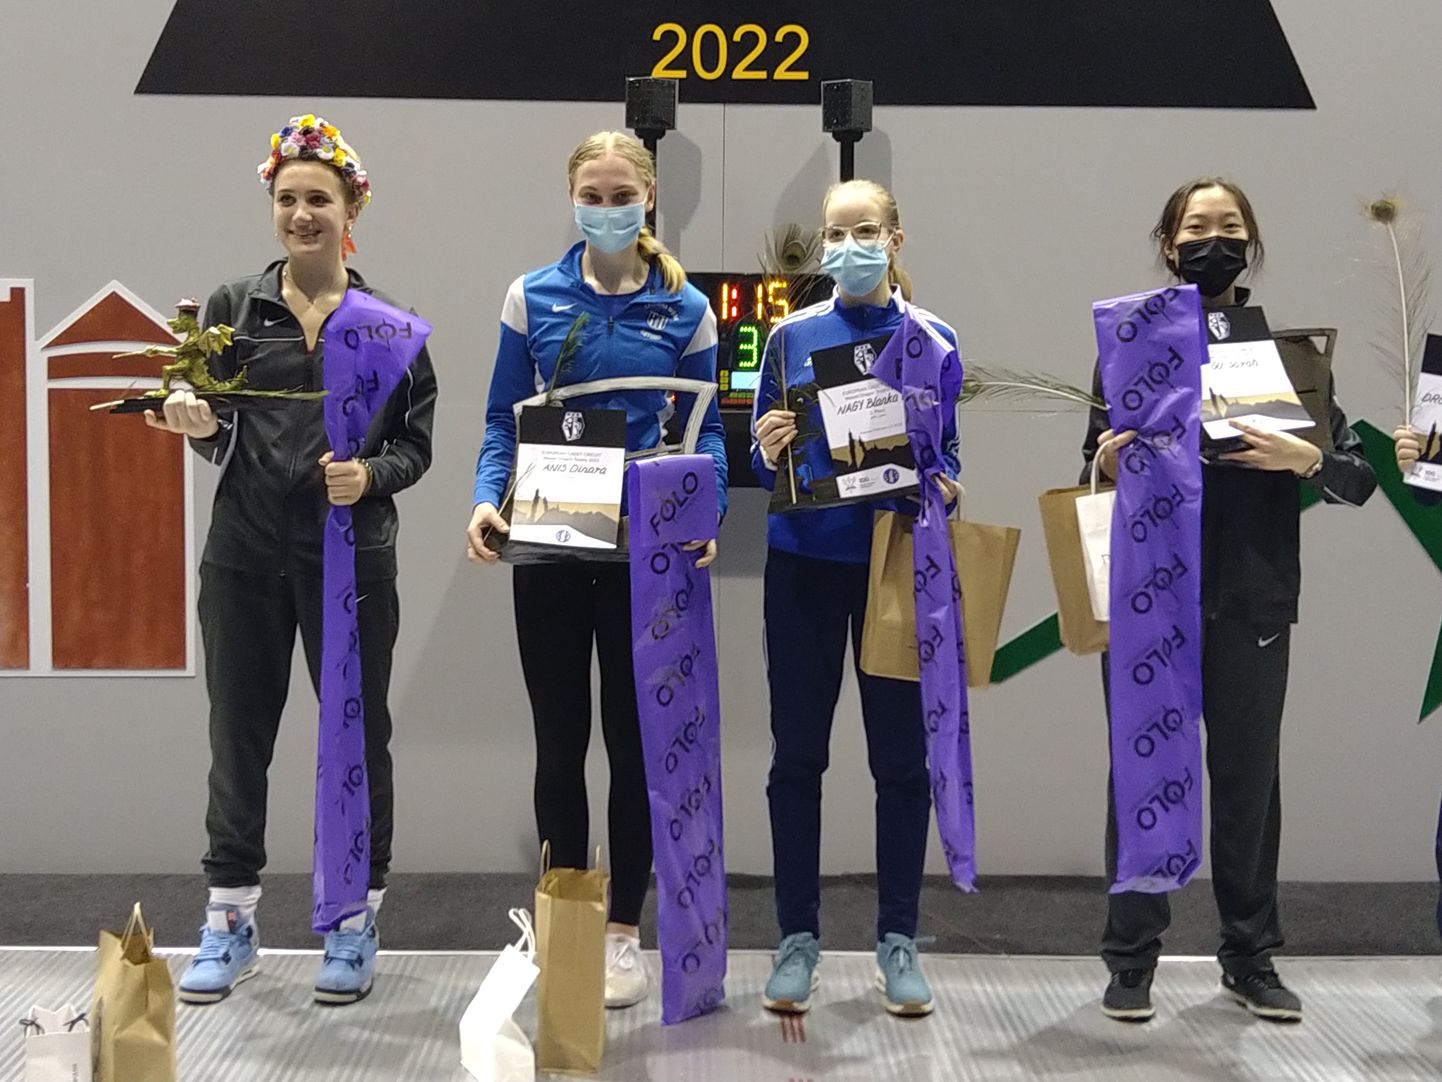 Победительницы этапа кубка Европы по фехтованию: Кайли Фэллон, Динара Анис, Бланка Вираг Наги и Сара Гу.